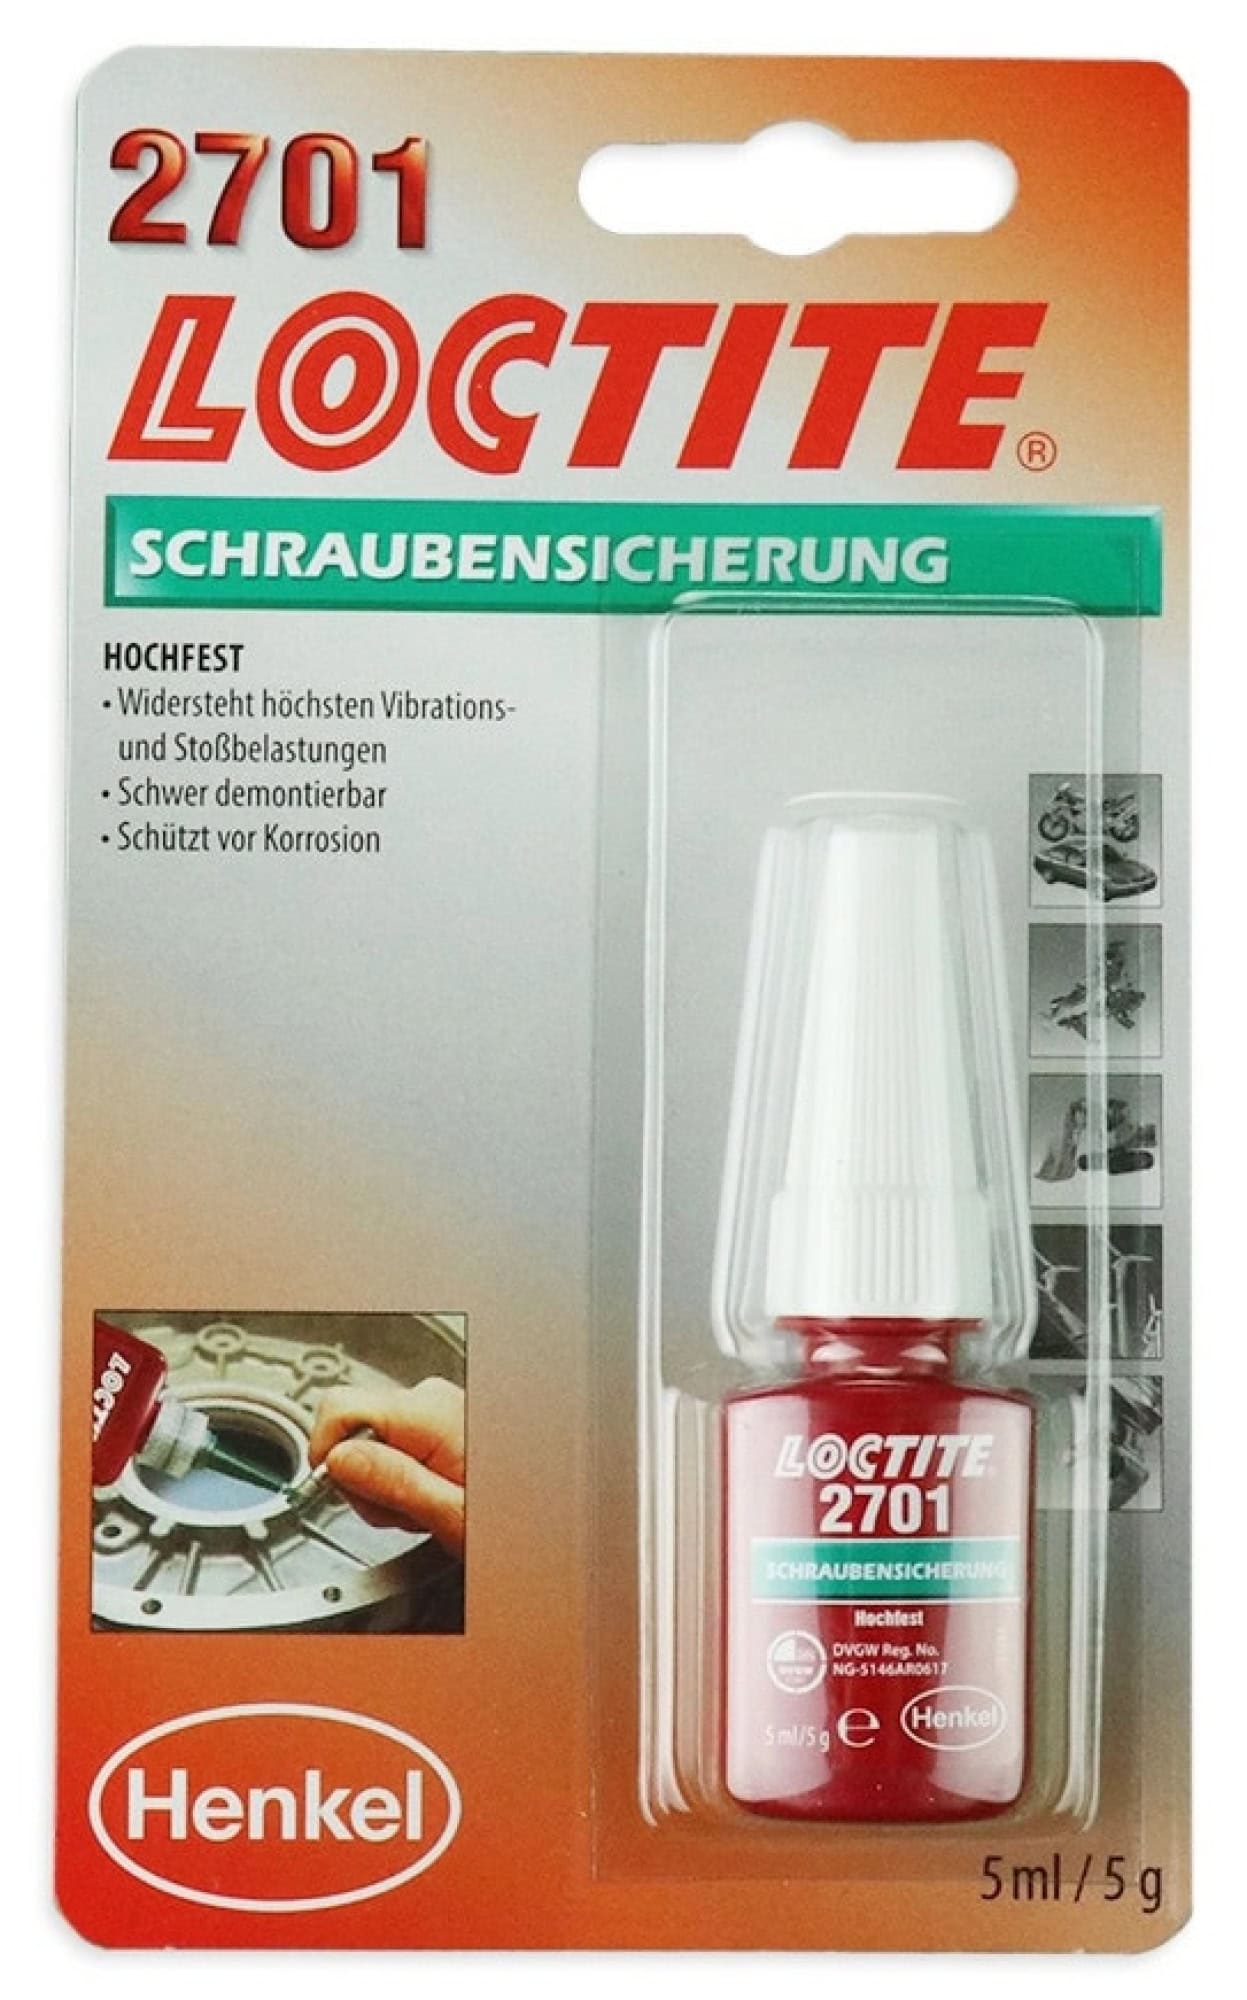 Henkel™ Loctite® Schraubensicherung 2701, 5 ml, Grün, 195911, besonders für galvanisierte Oberflächen geeignet